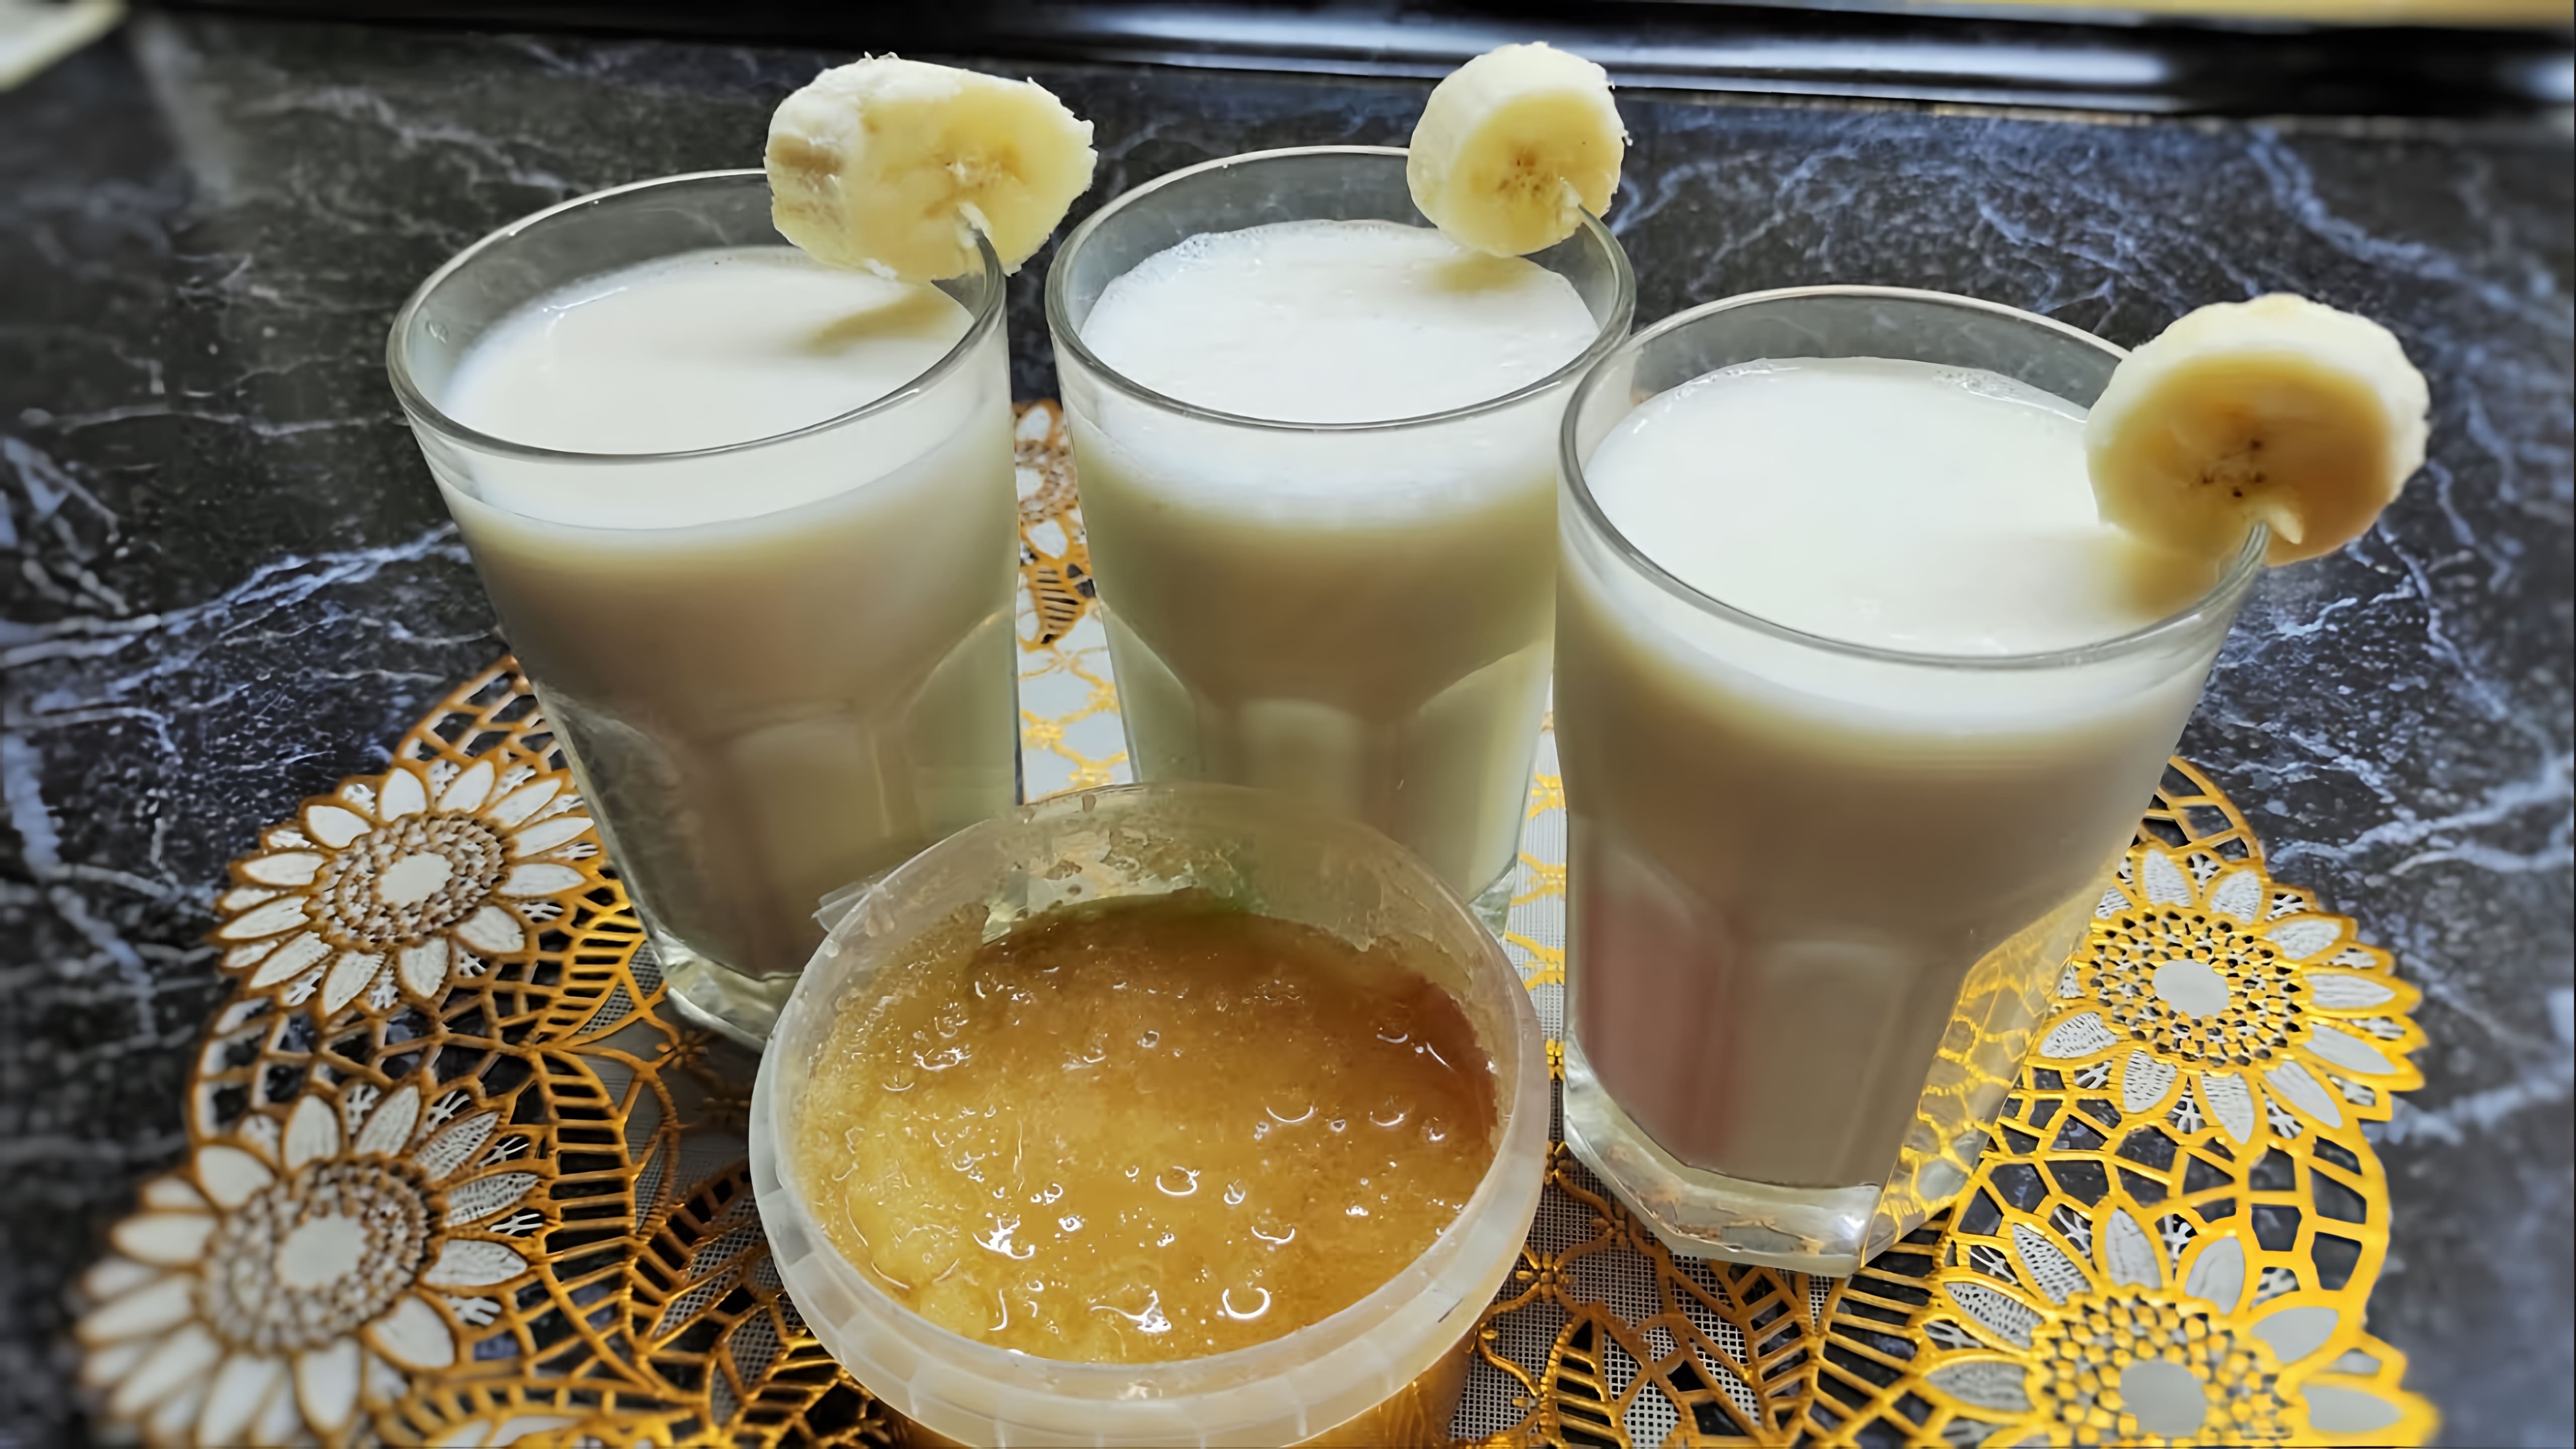 В этом видео демонстрируется процесс приготовления полезного летнего коктейля из кефира, банана, лимонного сока, меда и ванильного сахара